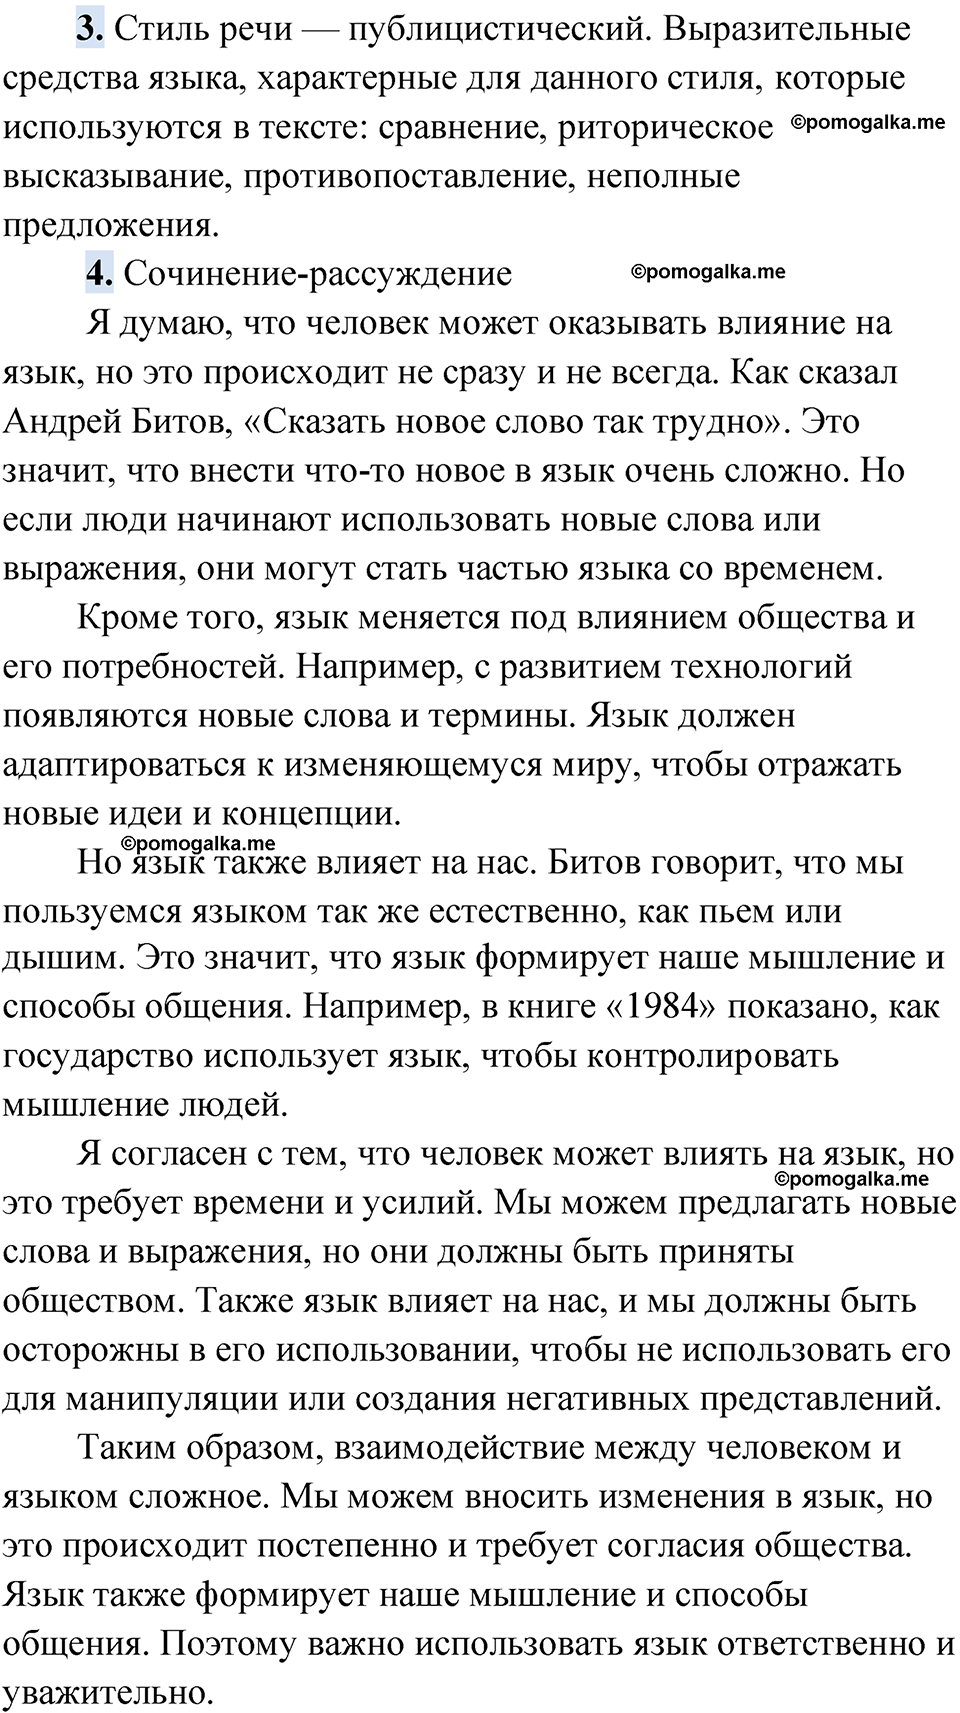 страница 5 упражнение 1 русский язык 9 класс Быстрова 1 часть 2022 год